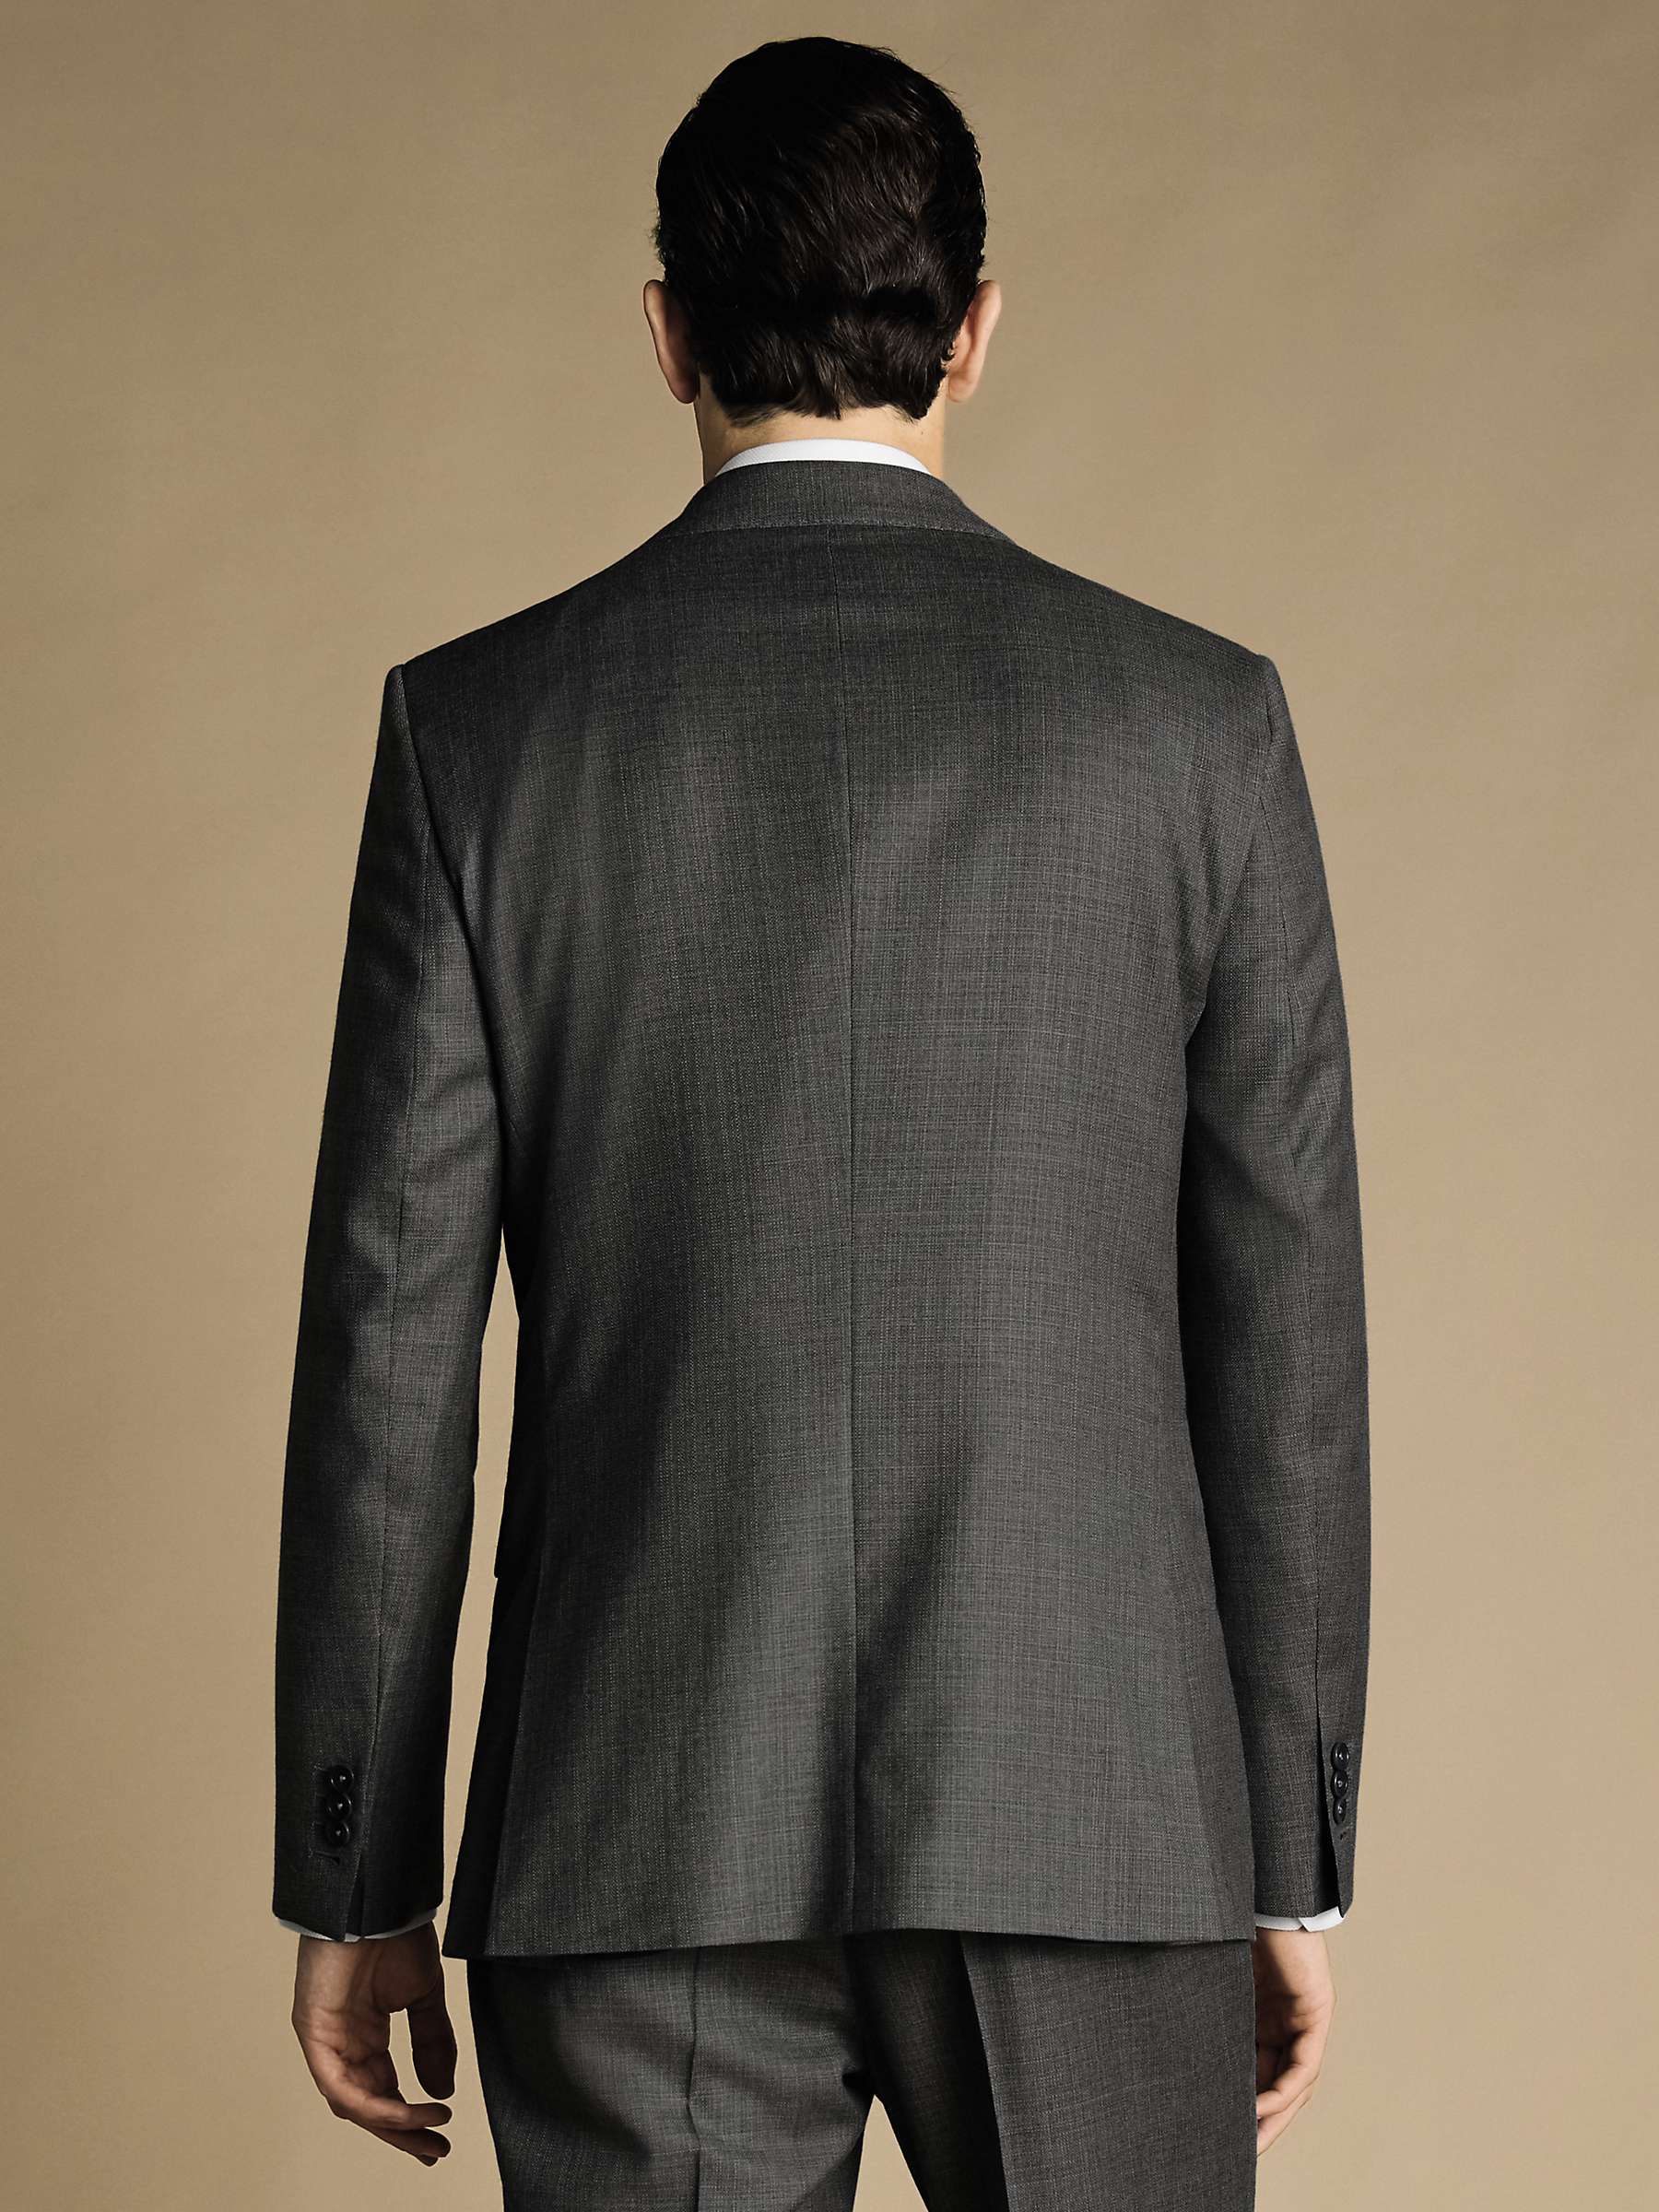 Buy Charles Tyrwhitt Slim Fit Italian Luxury Suit Jacket Online at johnlewis.com